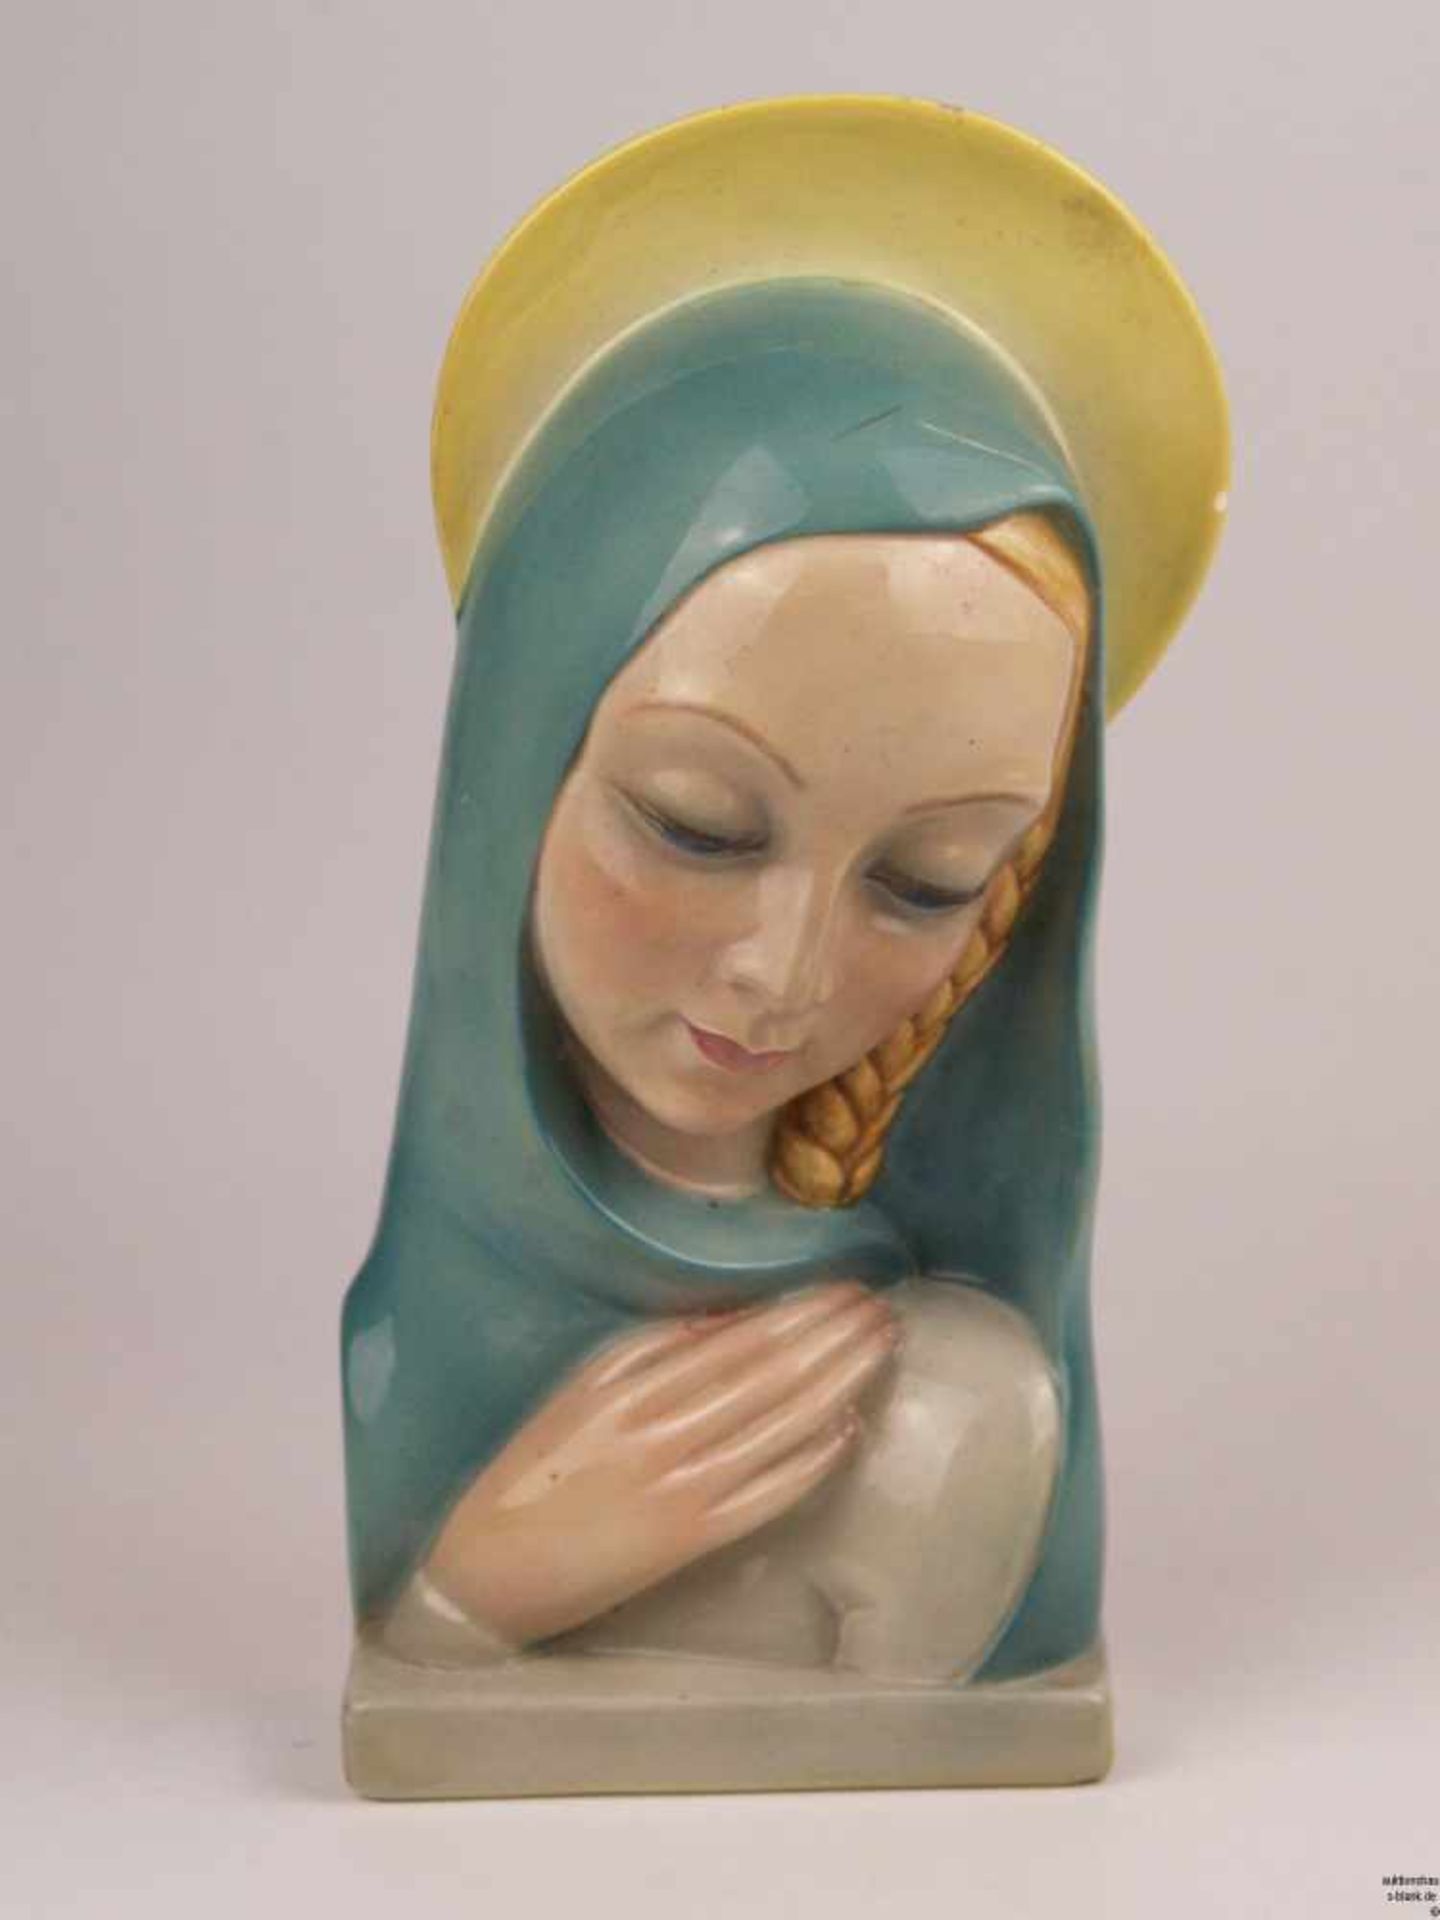 Keramik-Büste "Madonna" - Keramikmanufaktur "Lenci", Turin, heller Scherben, glasiert, polychrom